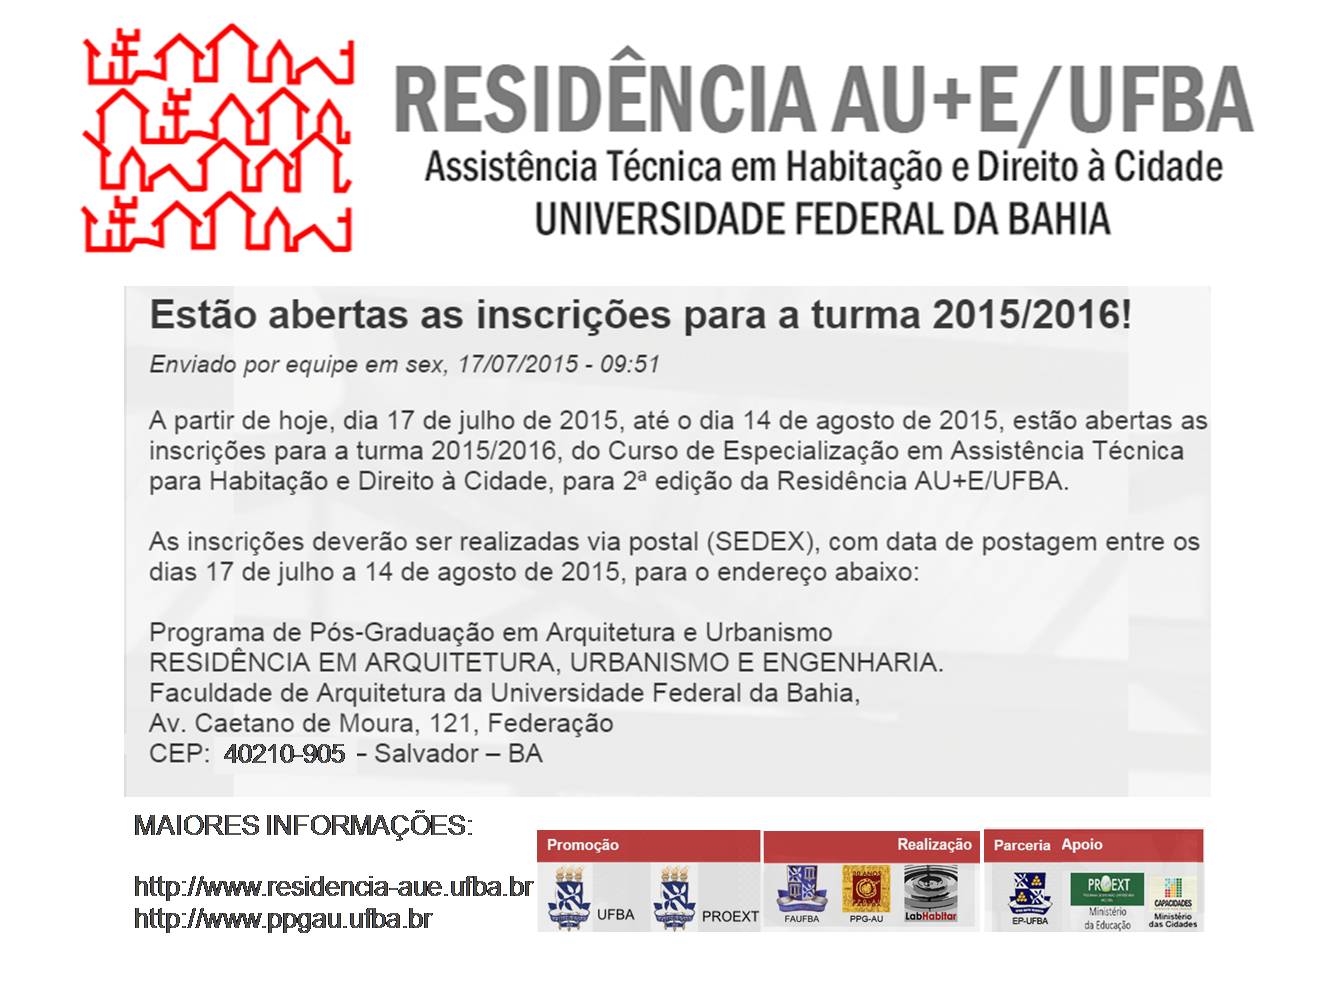 Esto abertas as inscries para a turma 2015/2016 da Residncia AU+E/UFBA! 